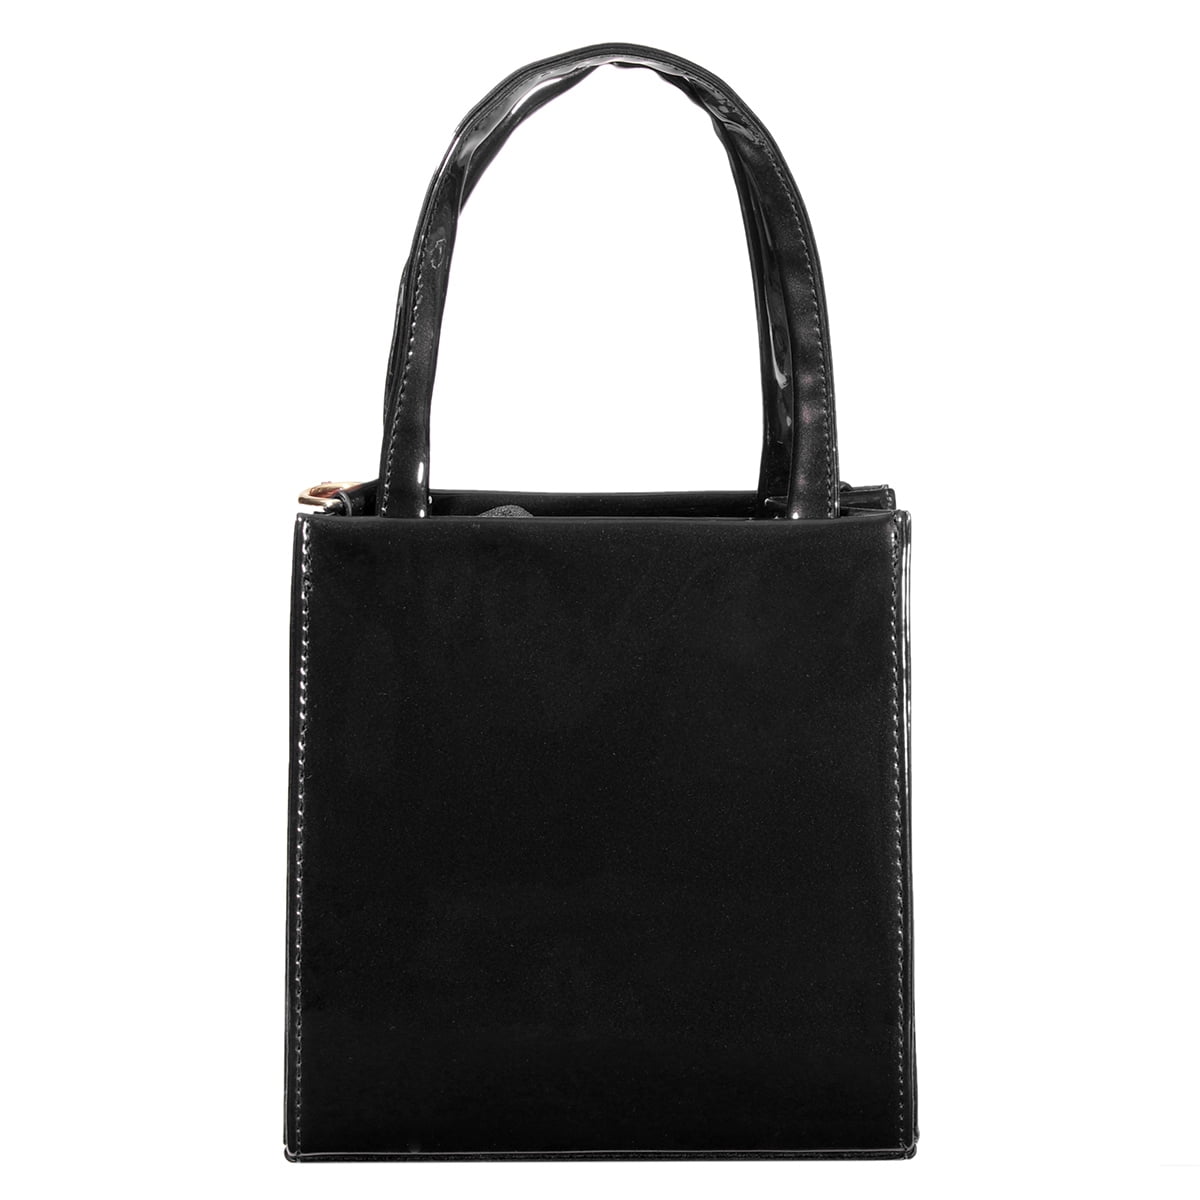 Lady Leather Handbag Crossbody Shoulder Messenger Bag Satchel Hobo Tote